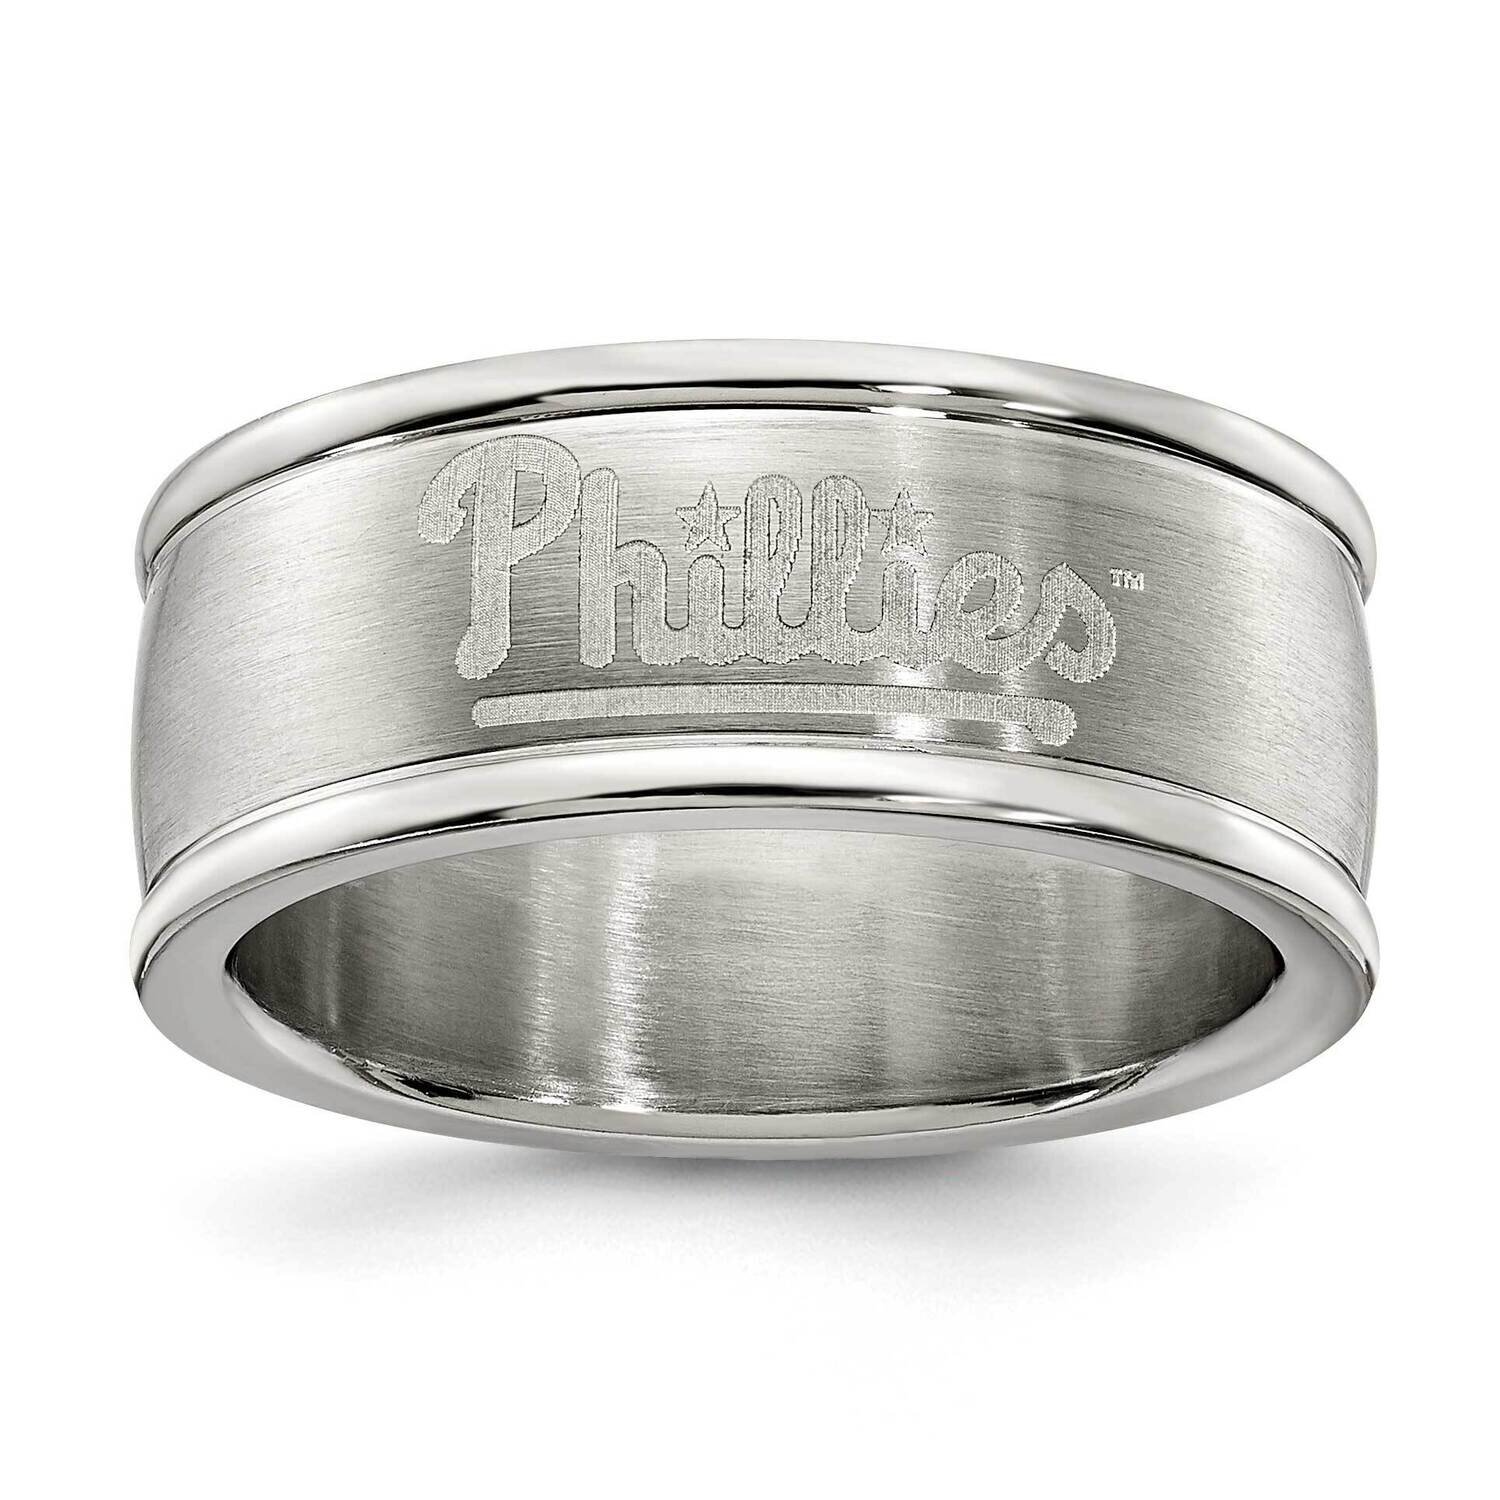 Philadelphia Phillies Logo Band Ring Stainless Steel PHI035-SZ6